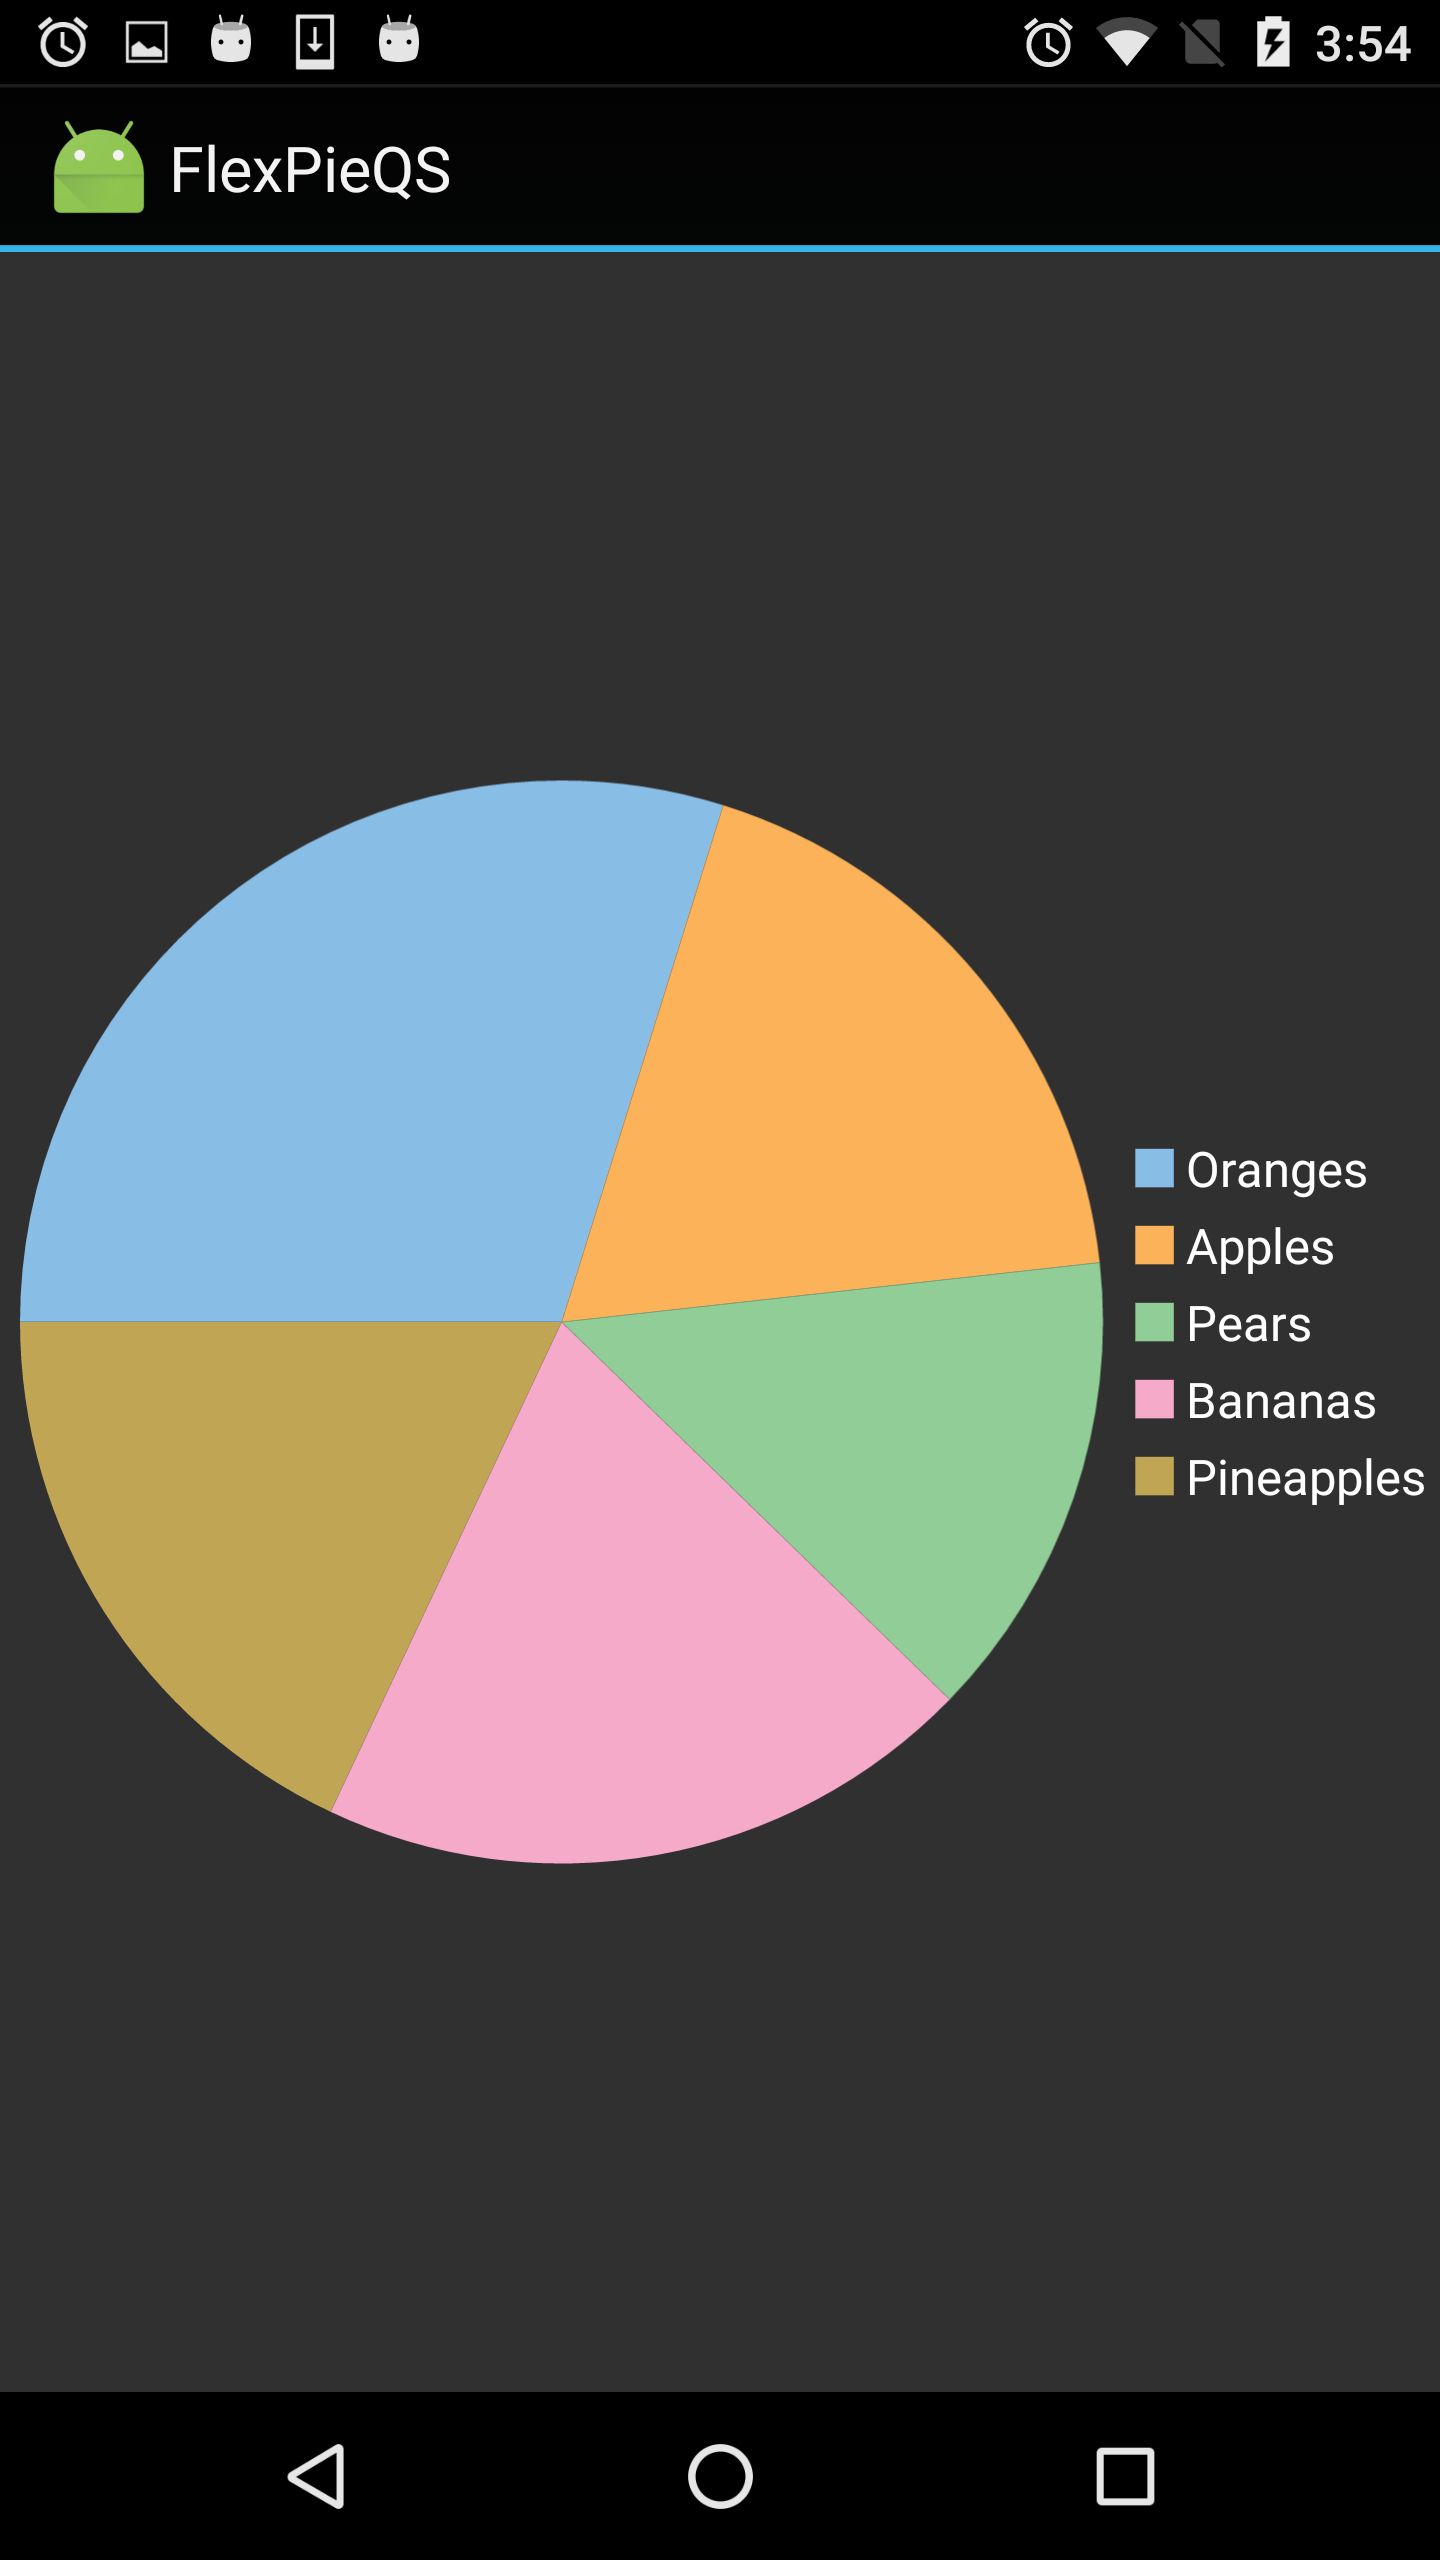 FlexPie showing fruits sales figure